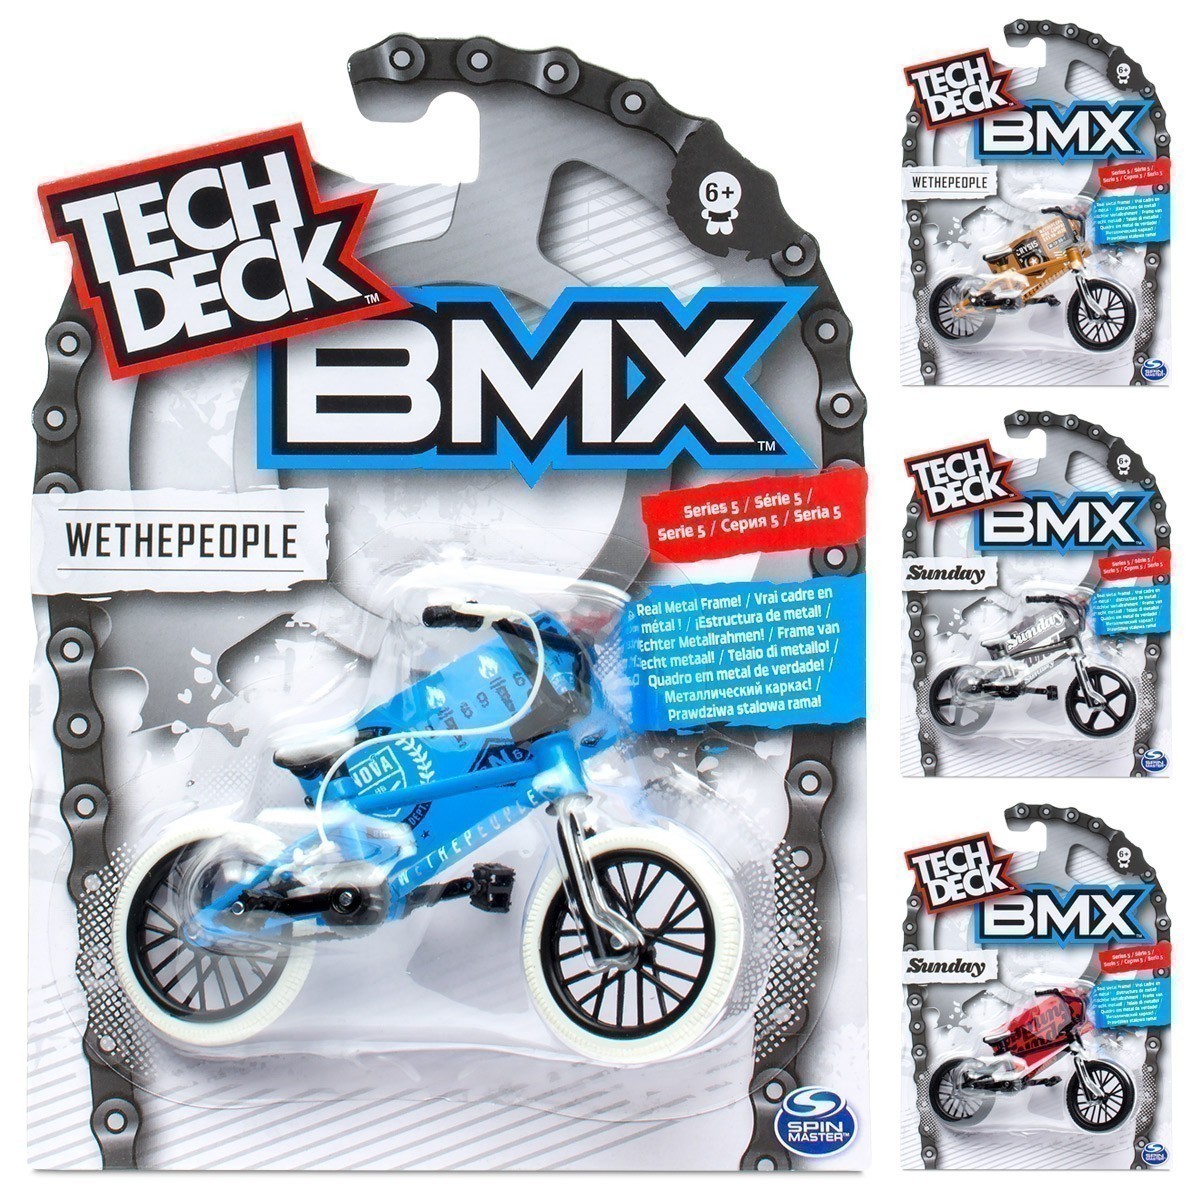 Tech Deck - Series 5 BMX Assortment